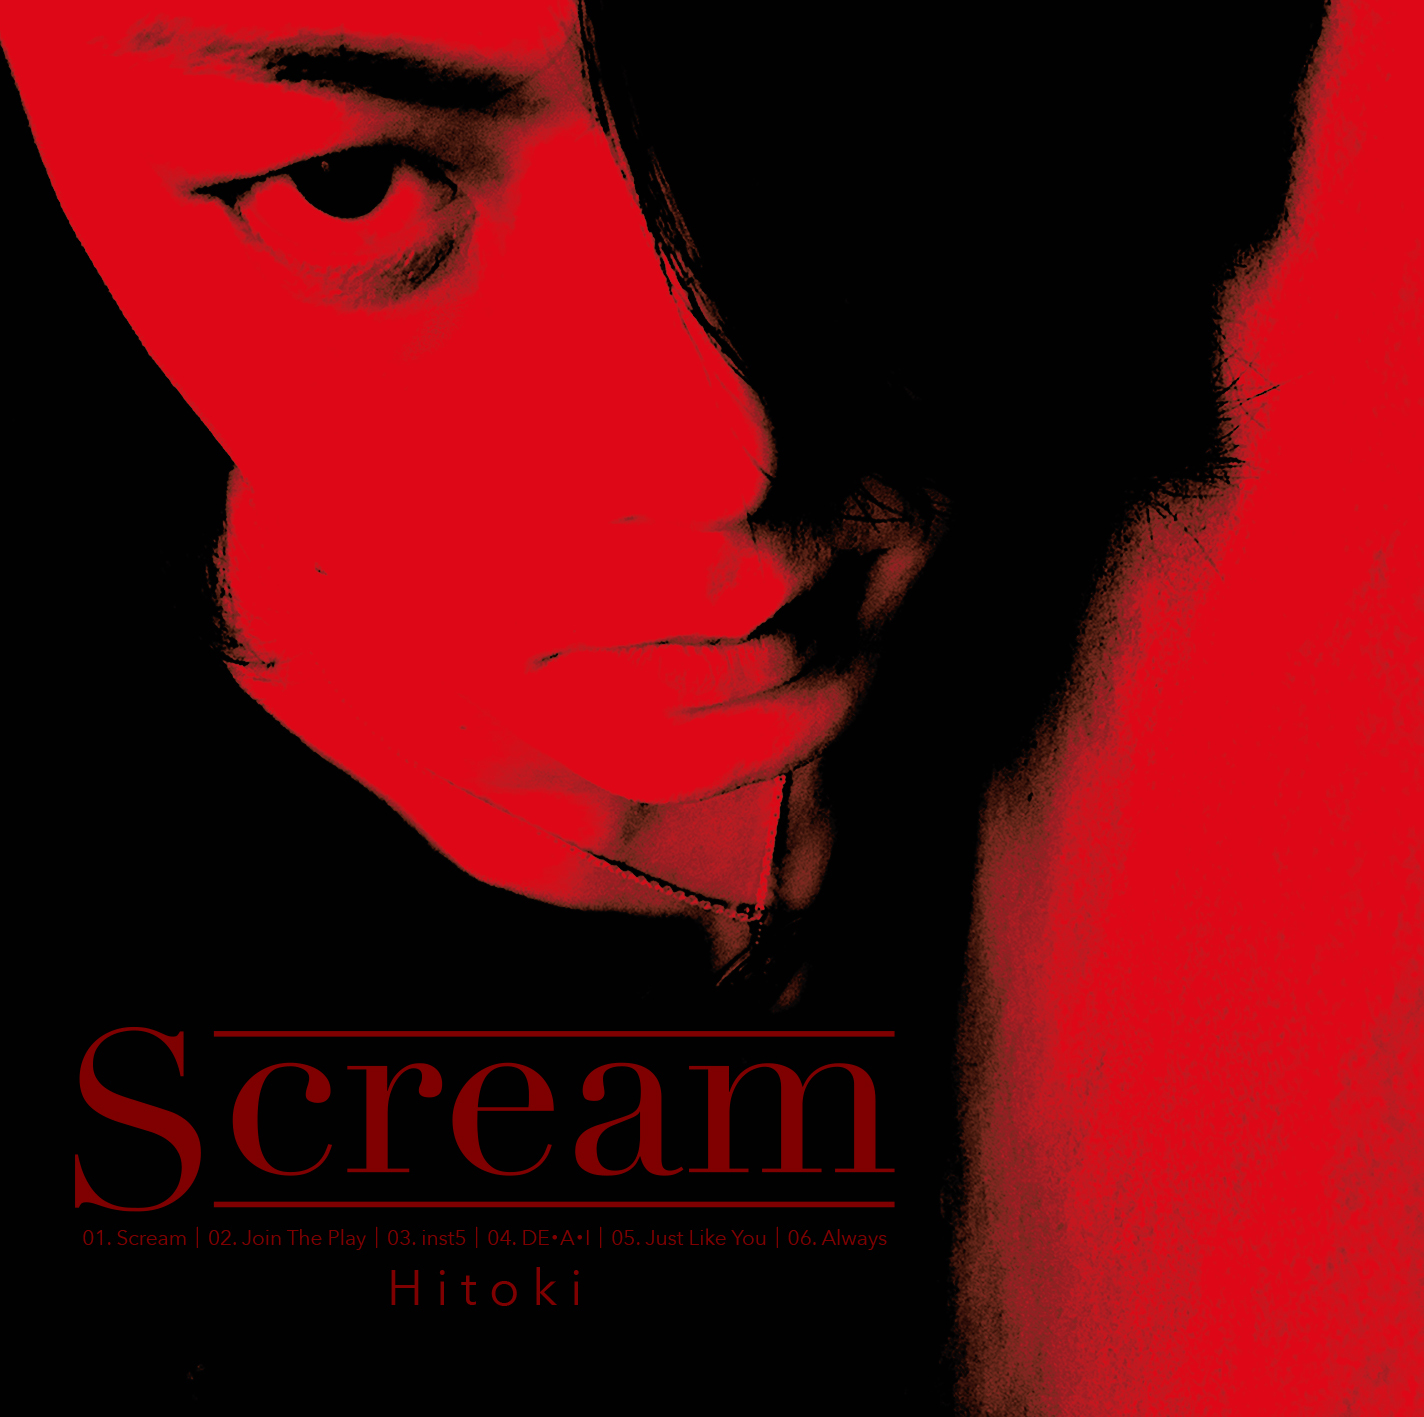 インストアルバム『Scream』